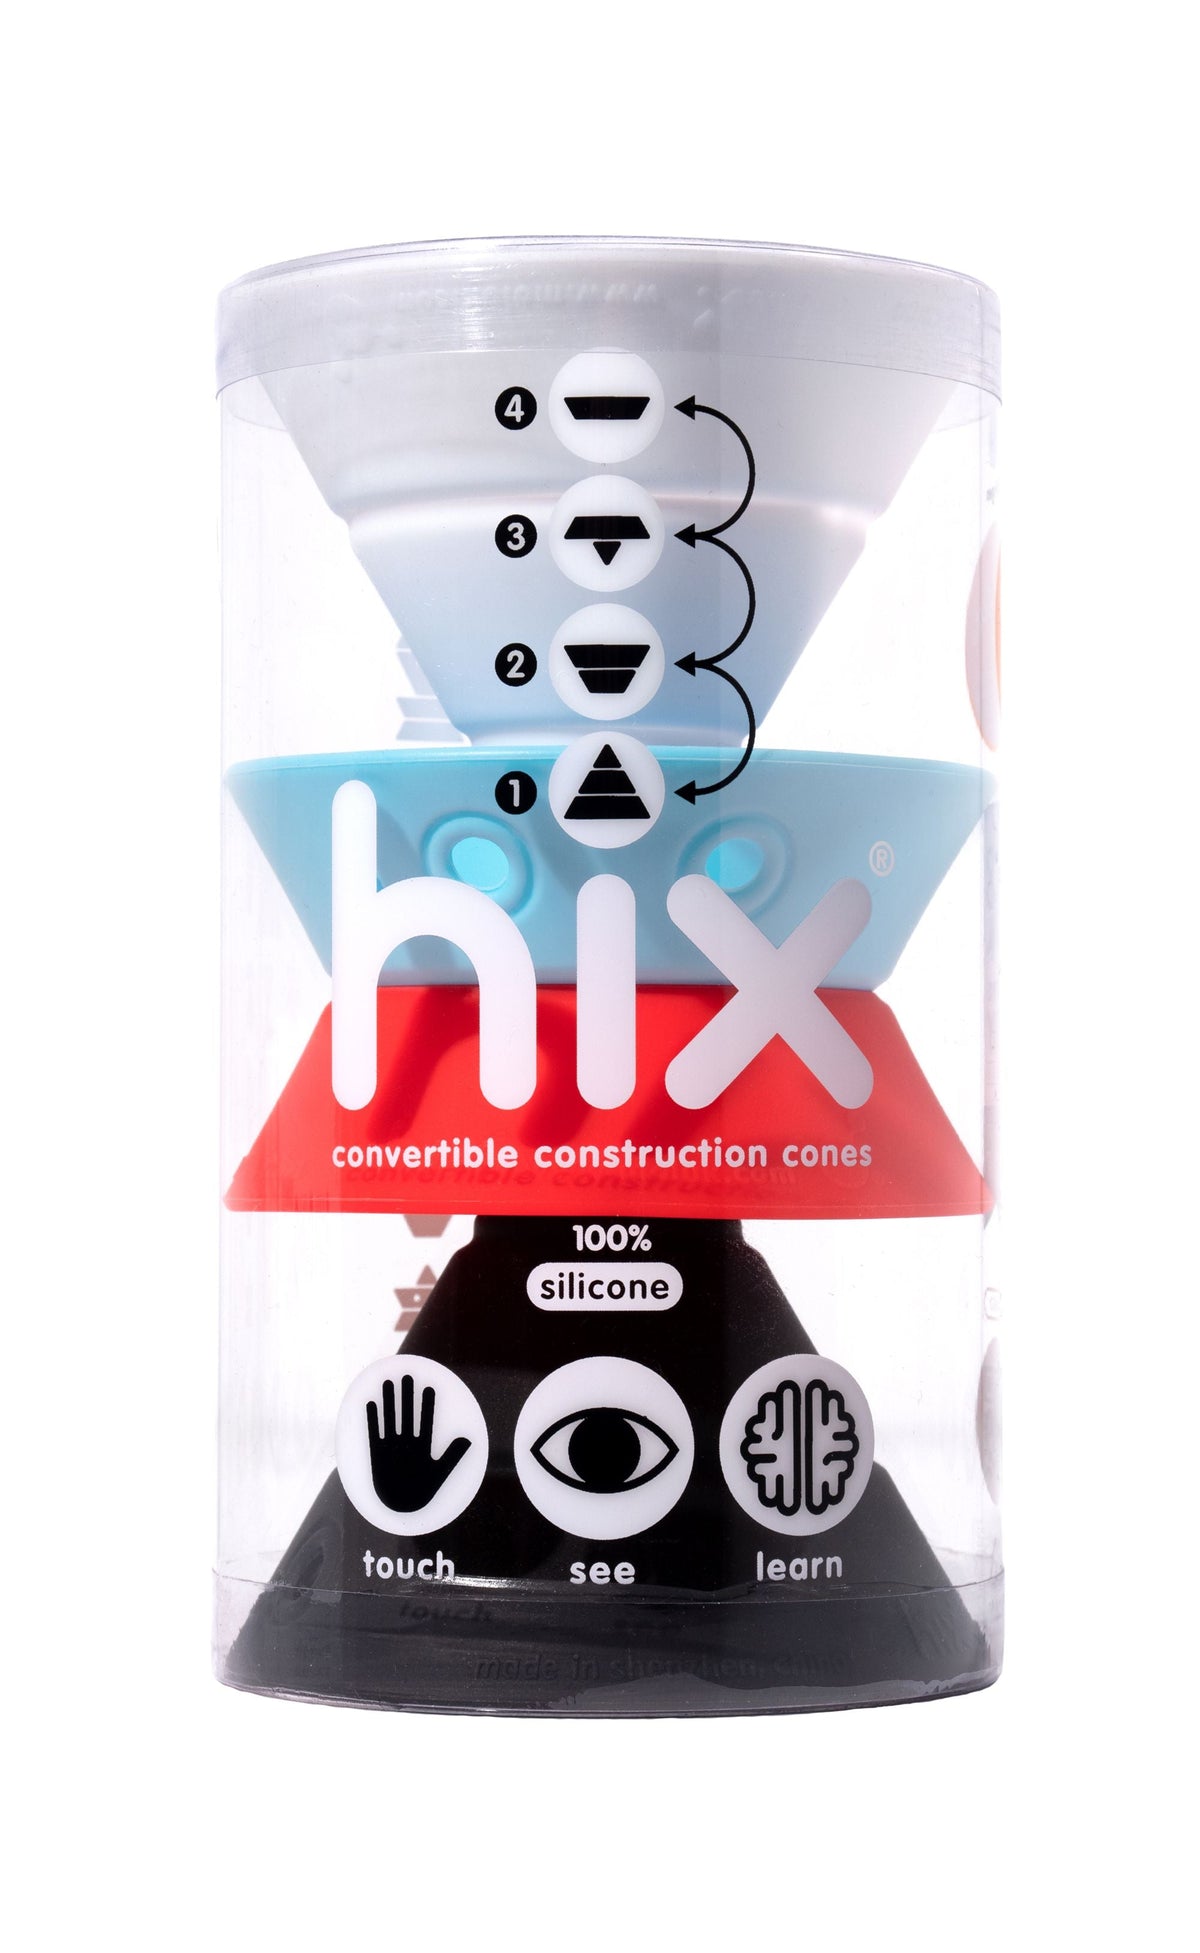 Moluk, Hix Convertible Construction Cones, Nordic Colors- Placewares